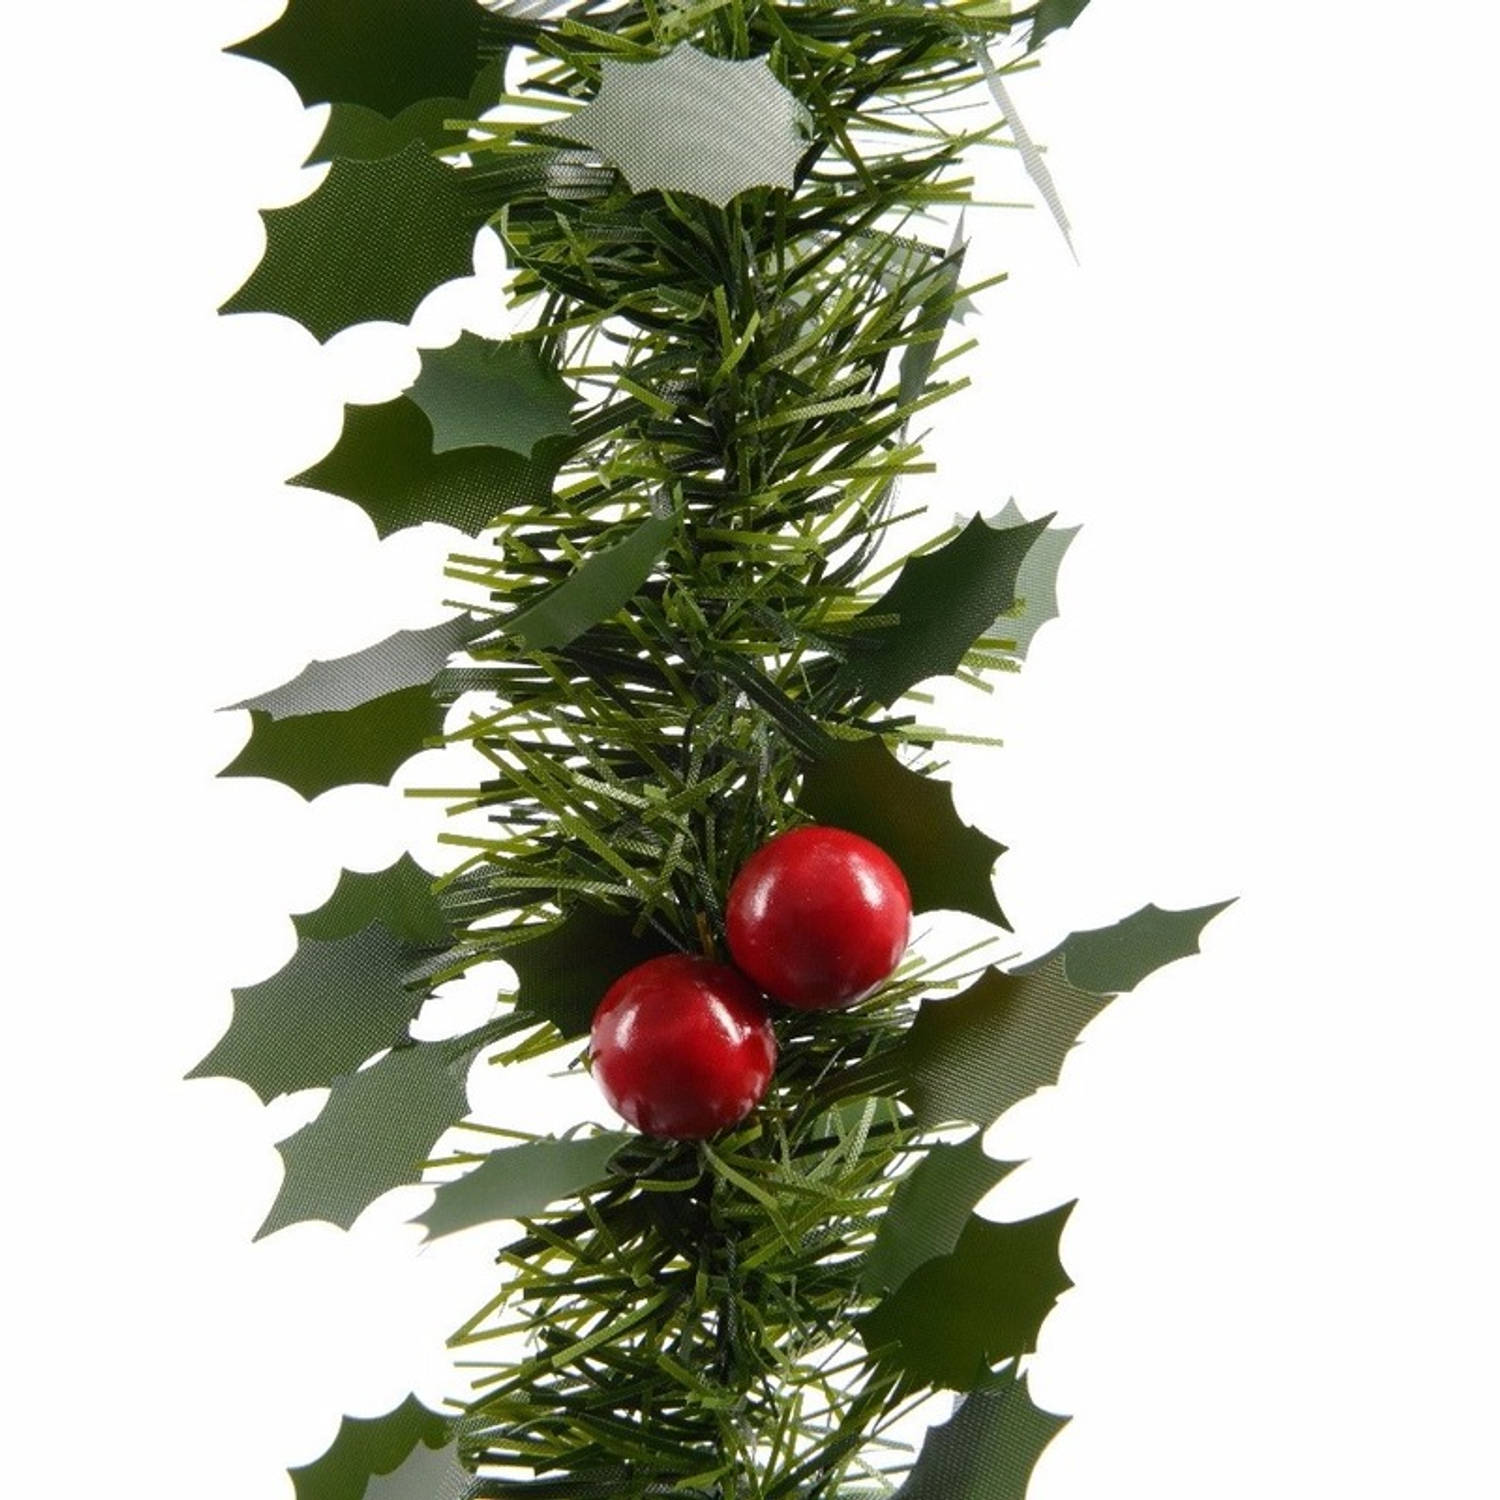 1x Kerstslinger guirlandes groen hulst 270 cm - Kerstversiering en decoraties - Dennenslingers